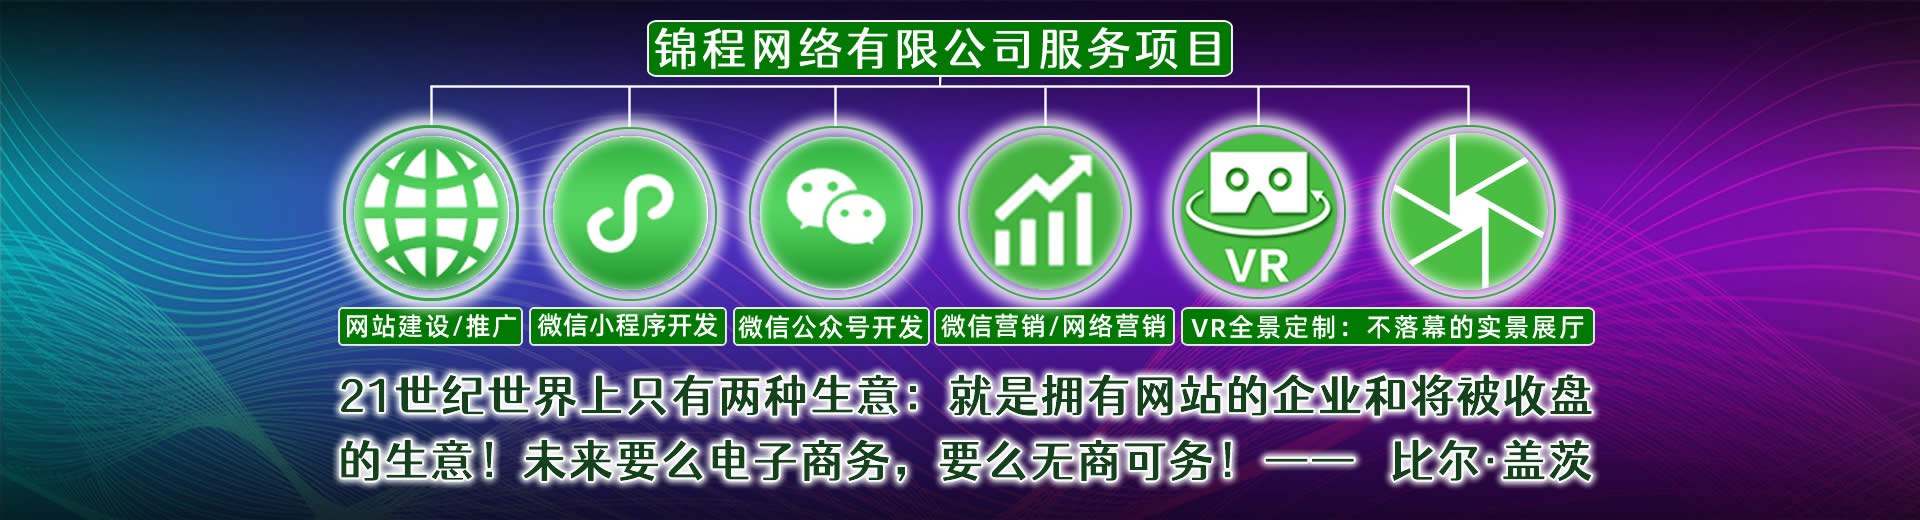 惠州锦程网络有限公司网站建设网络推广项目